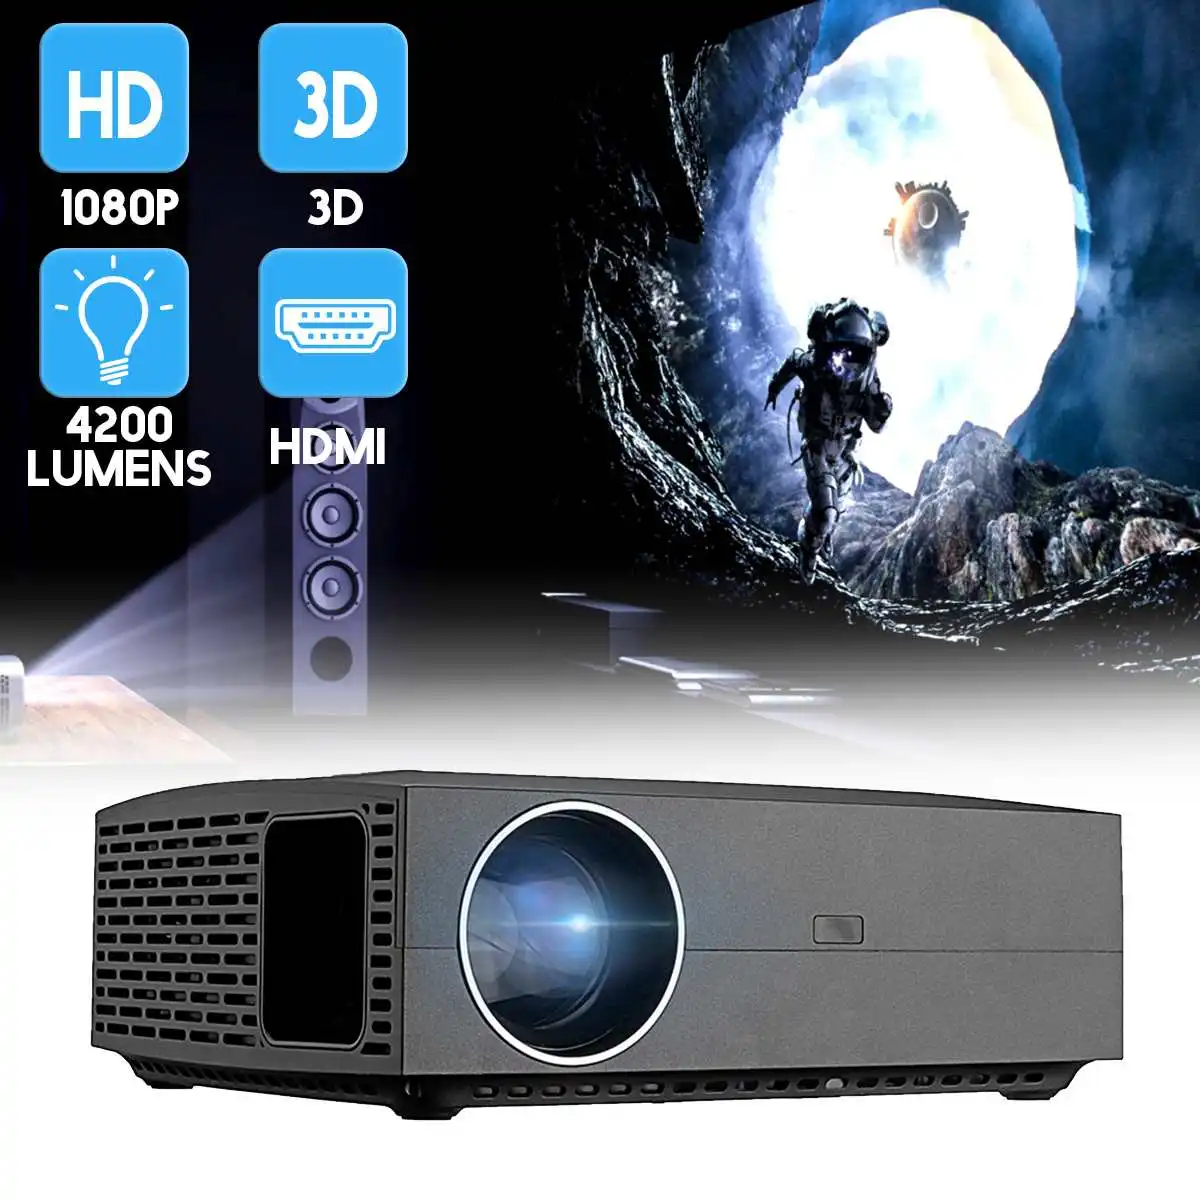 

ЖК-проектор 4200 люмен Full HD 1920x108 0P с поддержкой 3D, портативный домашний кинотеатр, аудио и видео проектор, телефон с одинаковым экраном, вилка с...